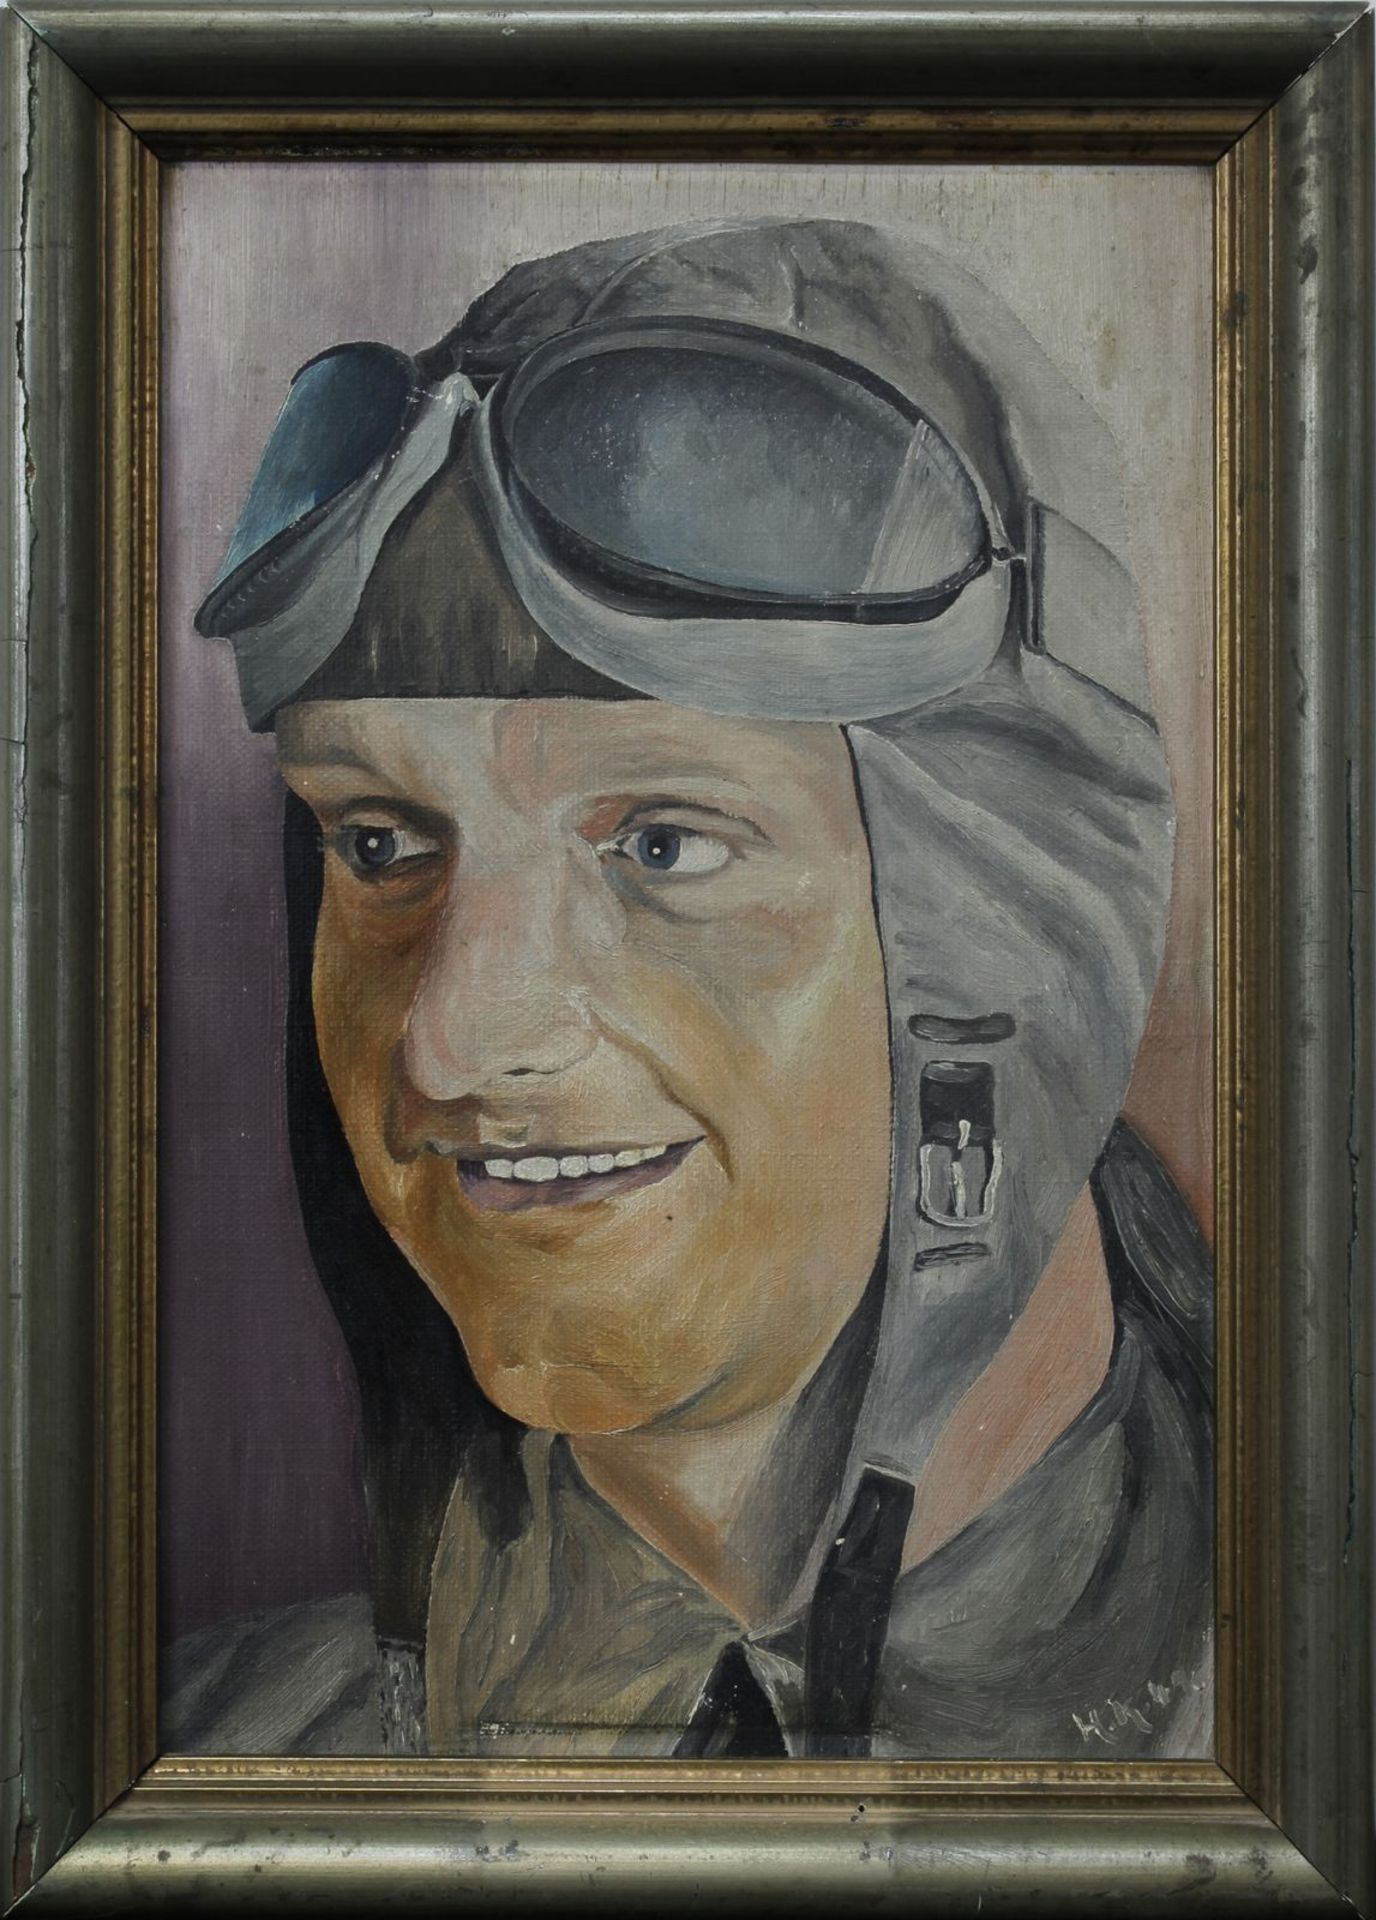 Piloten-Portrait, Deutsches Reich 1933 - 1945, rechts unten monogrammiert H.K., datiert (19)41, Öl